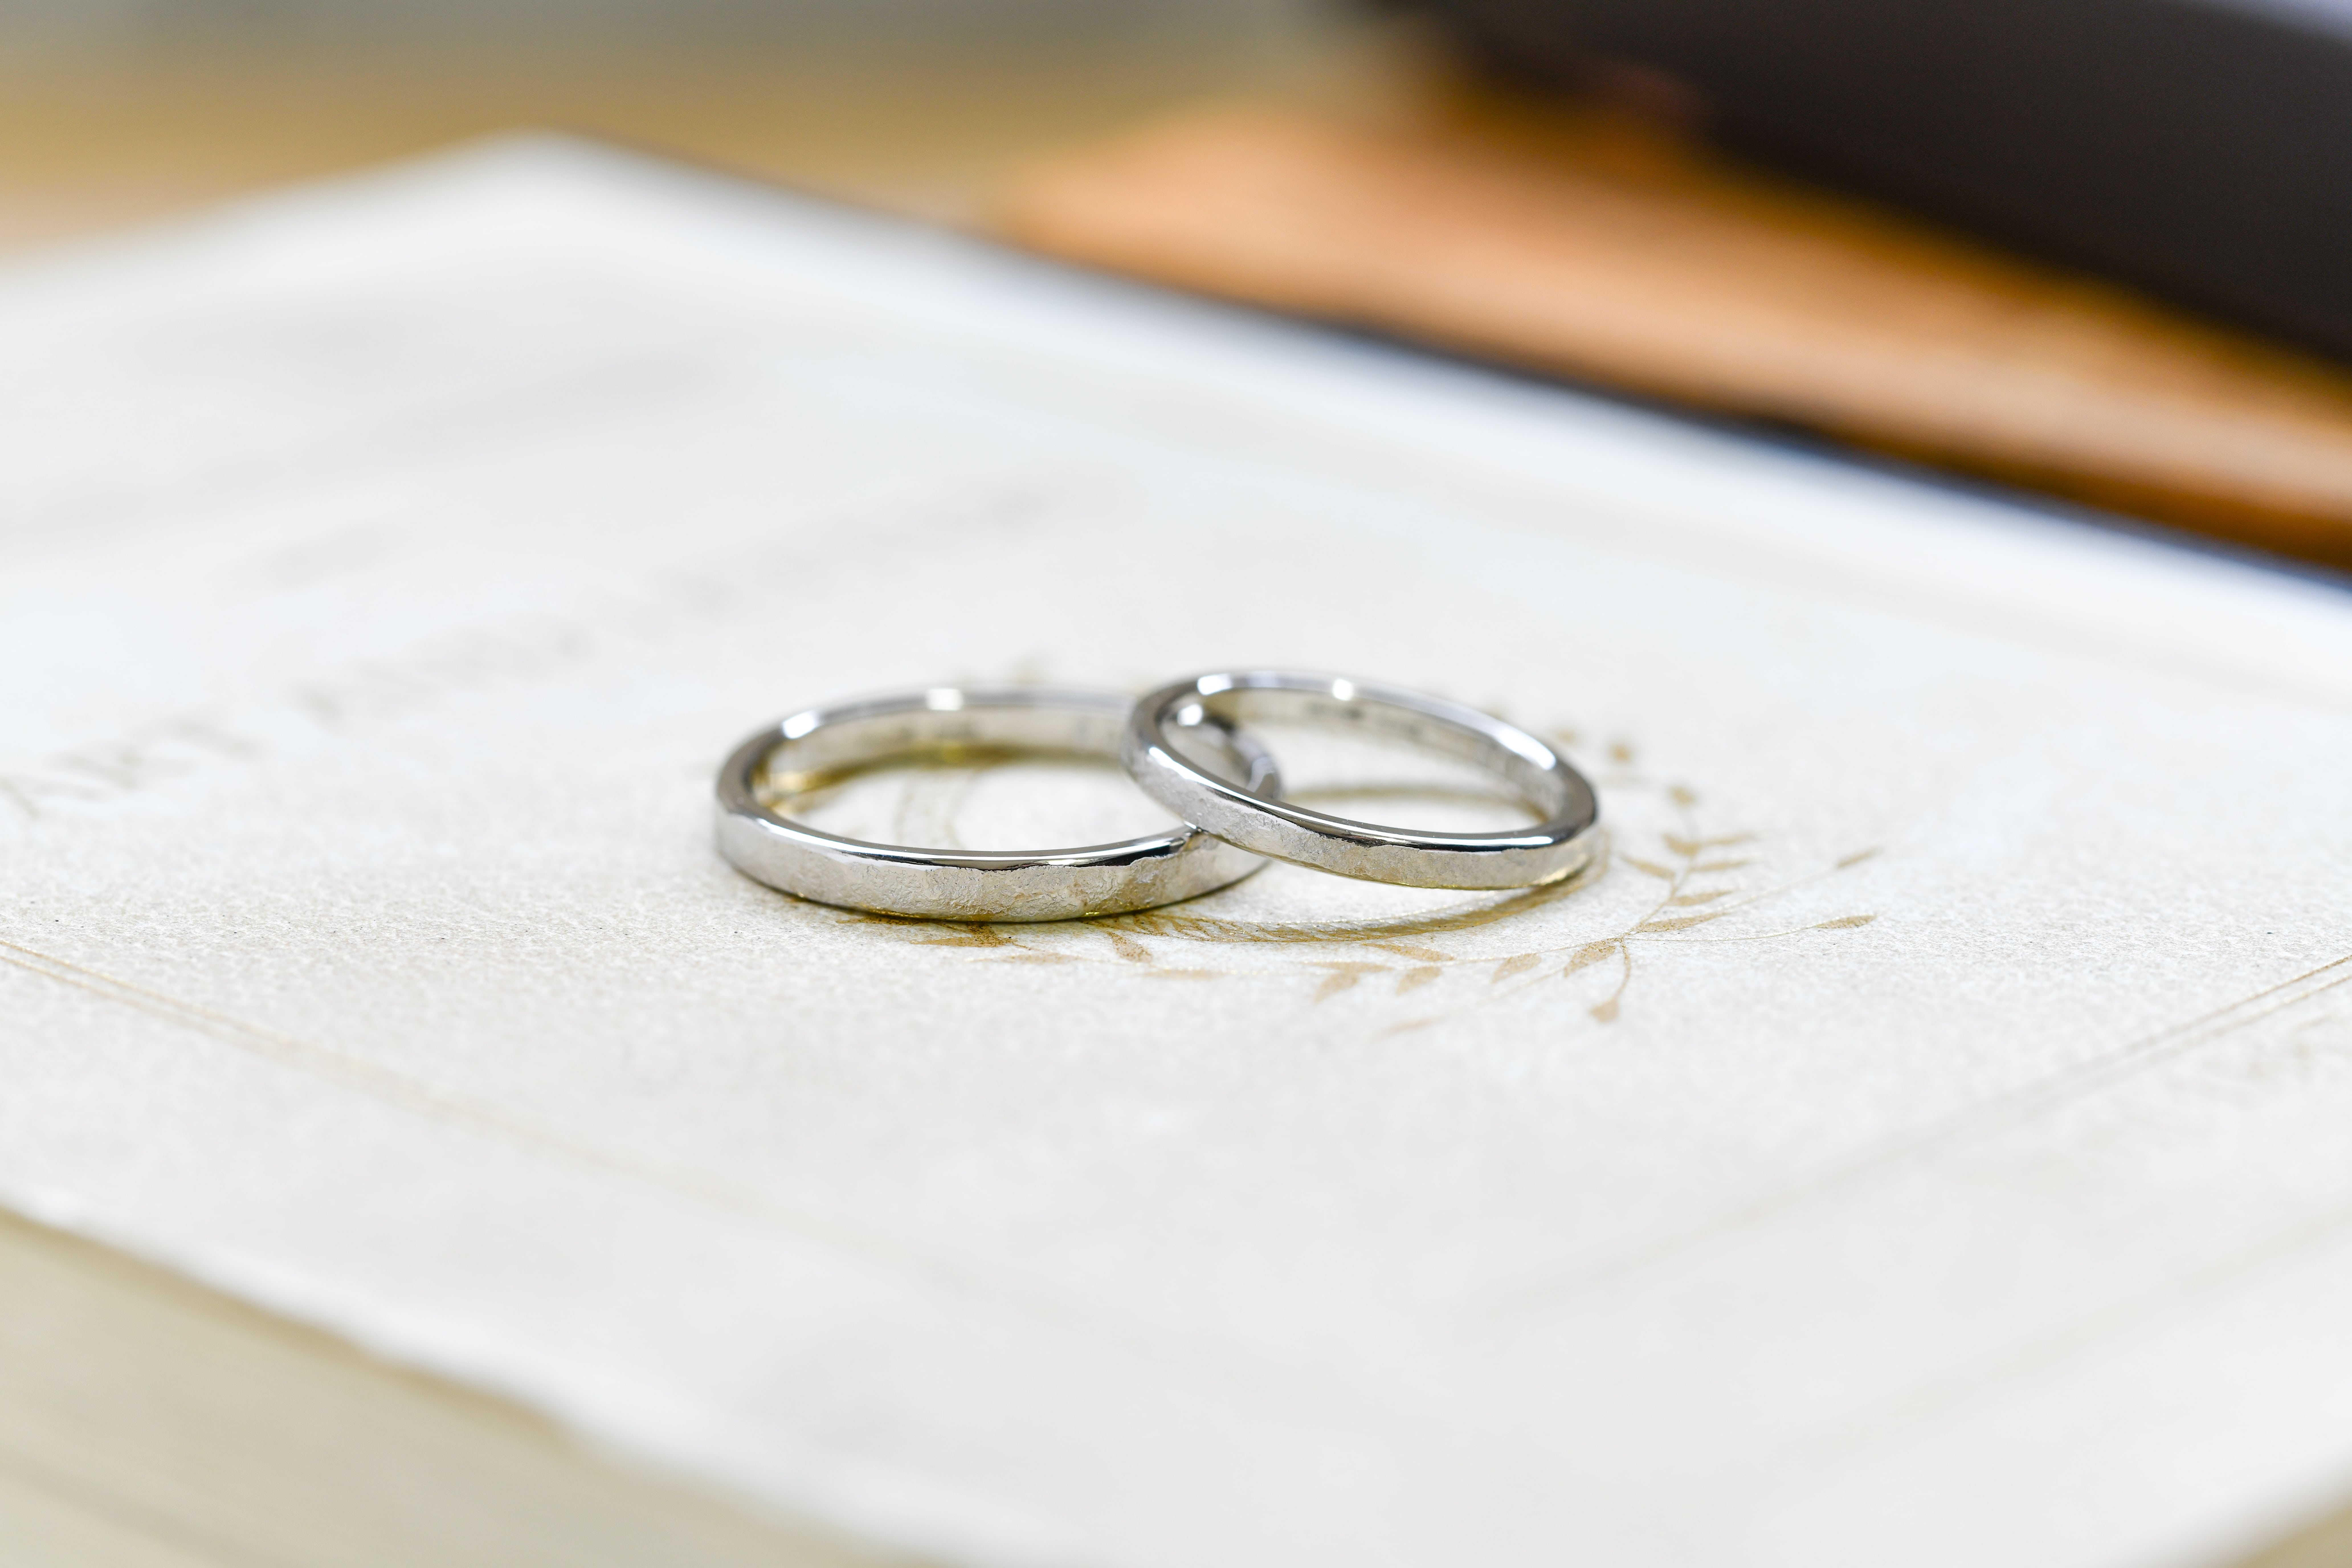 自然なマット感が素敵な結婚指輪 | 結婚指輪手作り作品